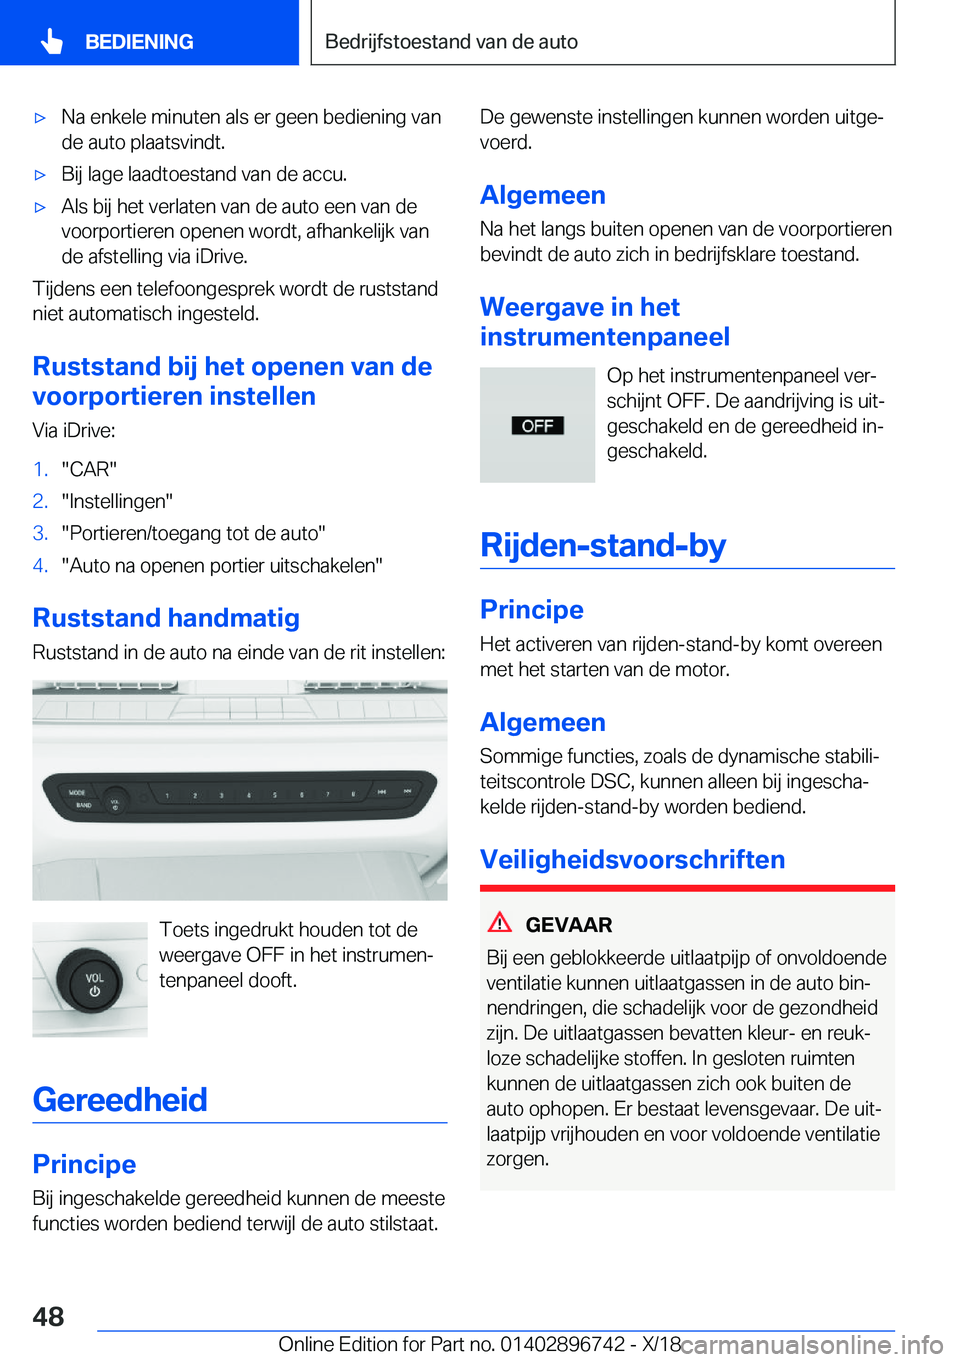 BMW X5 2019  Instructieboekjes (in Dutch) 'x�N�a��e�n�k�e�l�e��m�i�n�u�t�e�n��a�l�s��e�r��g�e�e�n��b�e�d�i�e�n�i�n�g��v�a�n�d�e��a�u�t�o��p�l�a�a�t�s�v�i�n�d�t�.'x�B�i�j��l�a�g�e��l�a�a�d�t�o�e�s�t�a�n�d��v�a�n��d�e��a�c